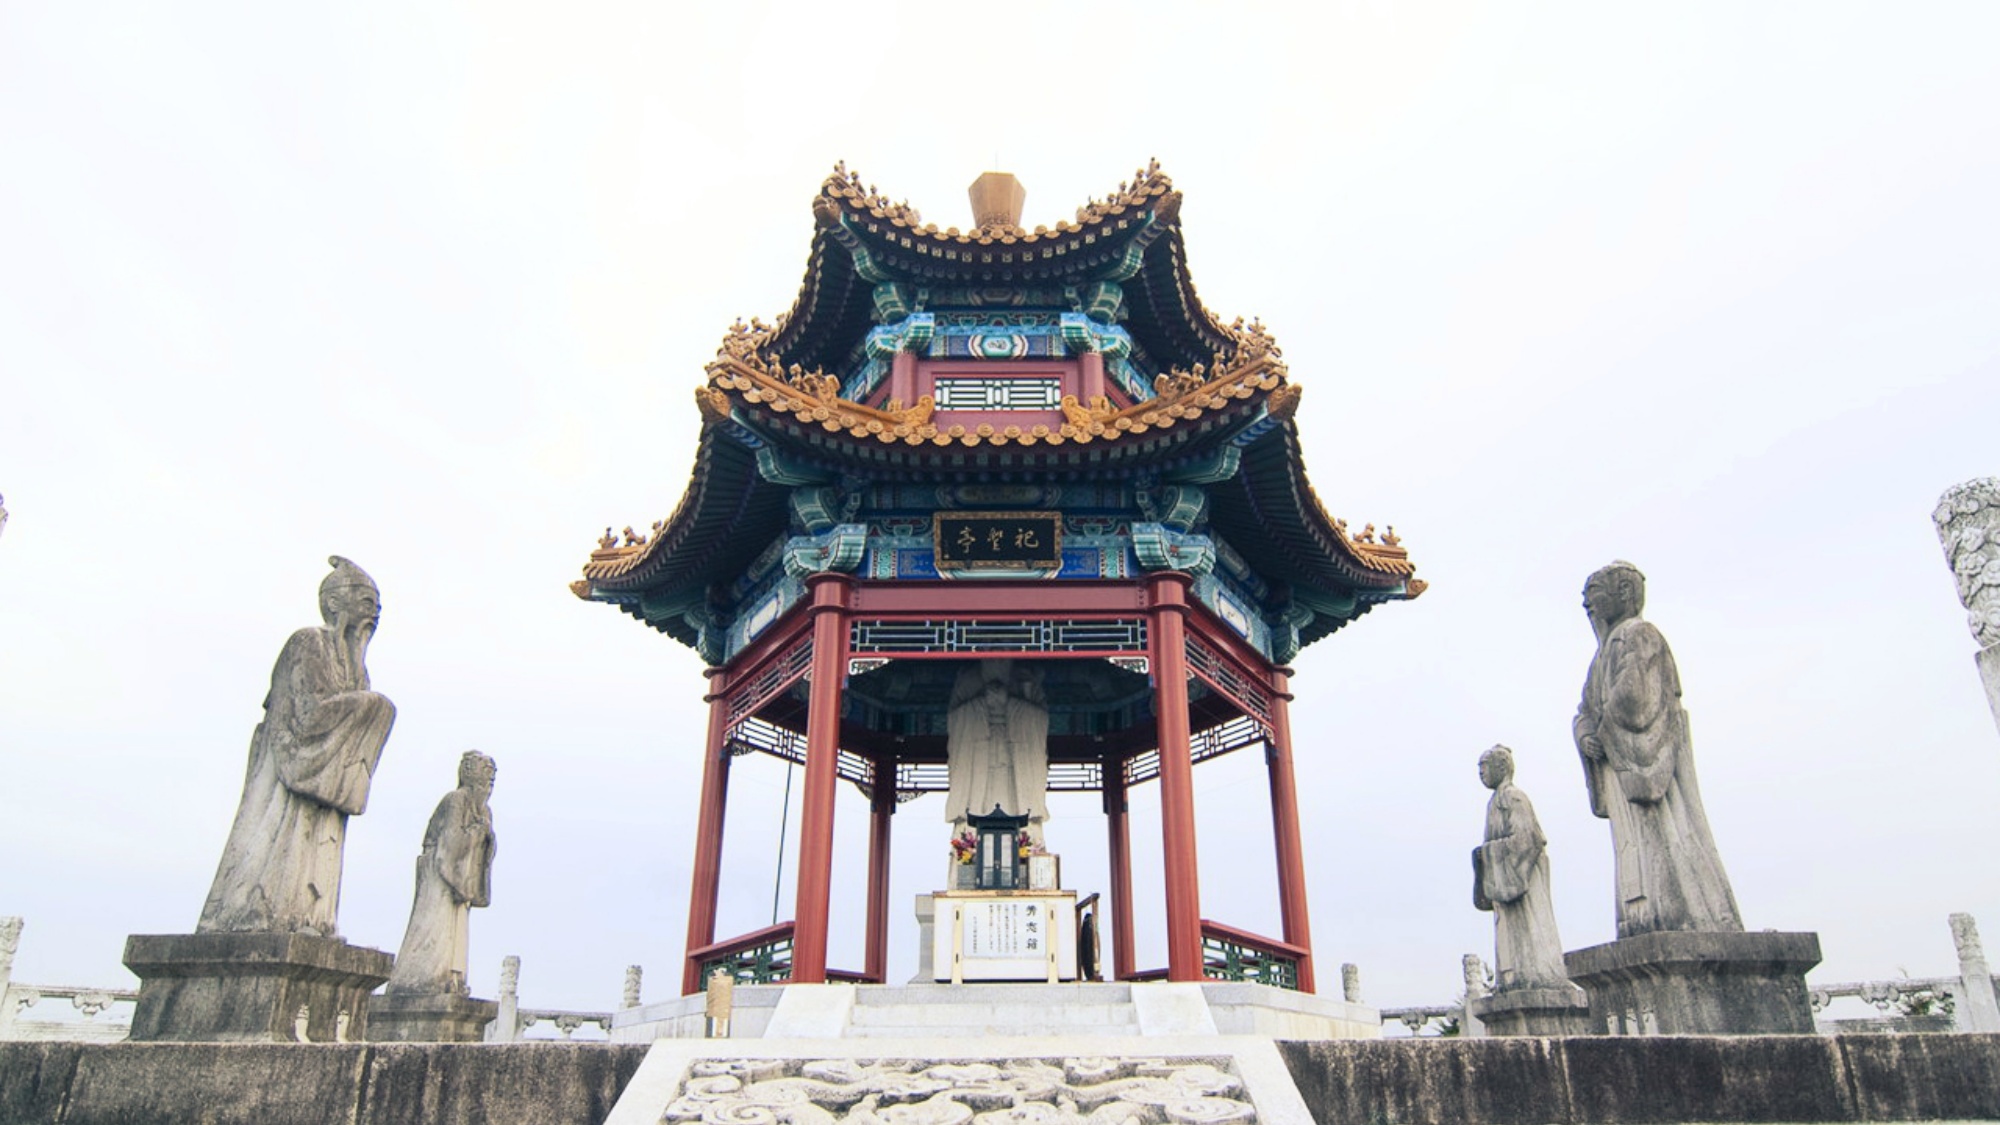 【泗水孔子公園】本格的な中国宮廷建築を取り入れた公園で古代中国にタイムスリップ！当館〜車で約15分。